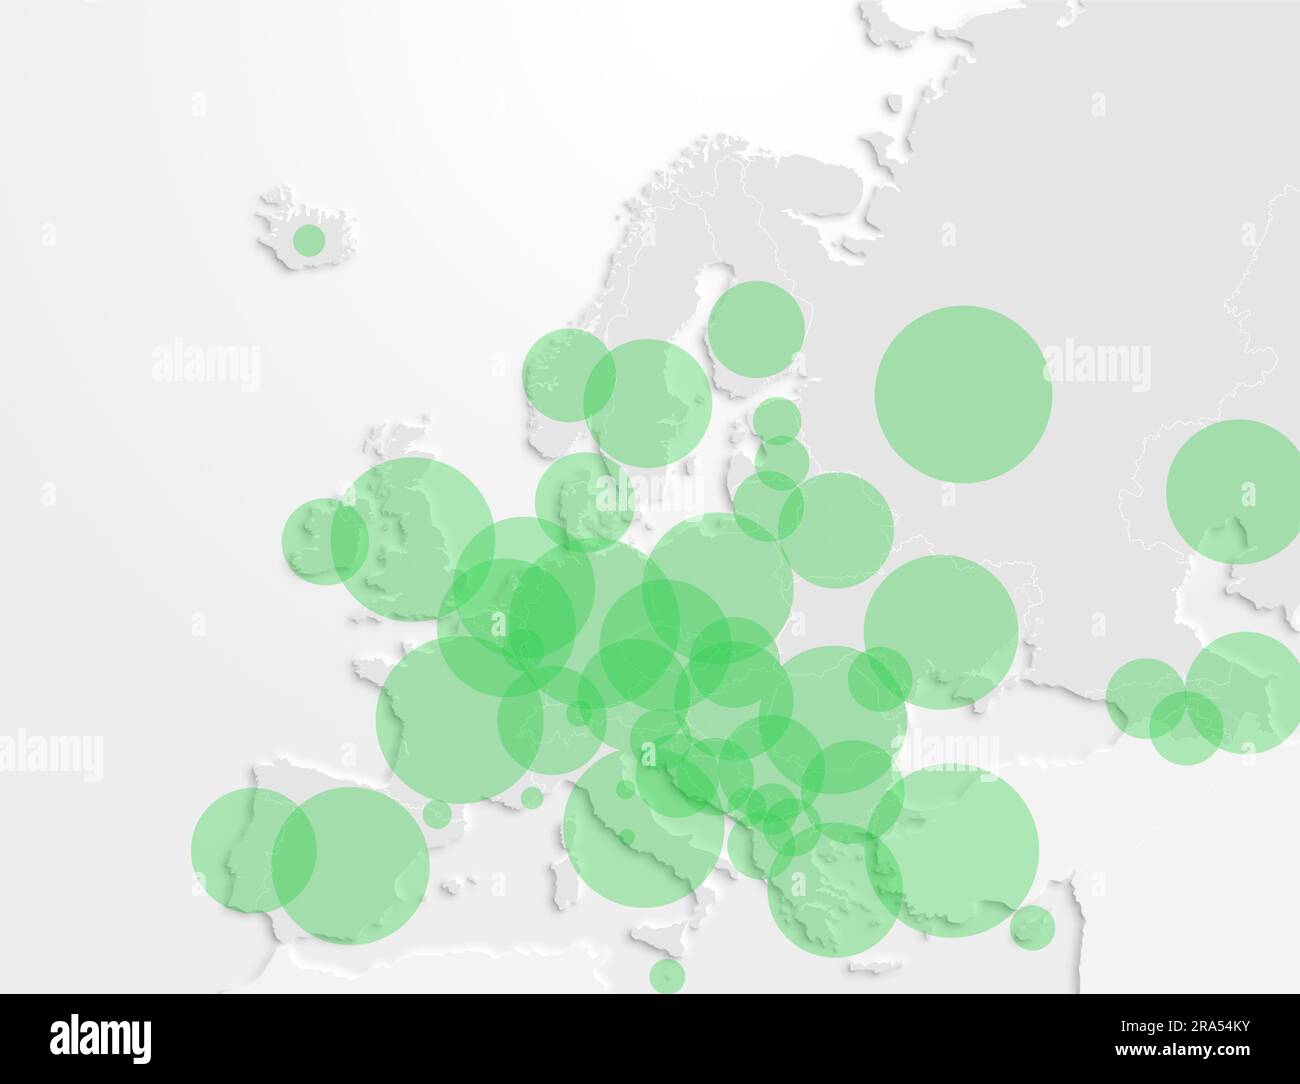 Karte des europäischen Kontinents mit grünen Kreisen, die die Bevölkerung in jedem Land repräsentieren. Abbildung der Bevölkerung in den europäischen Ländern. Stockfoto